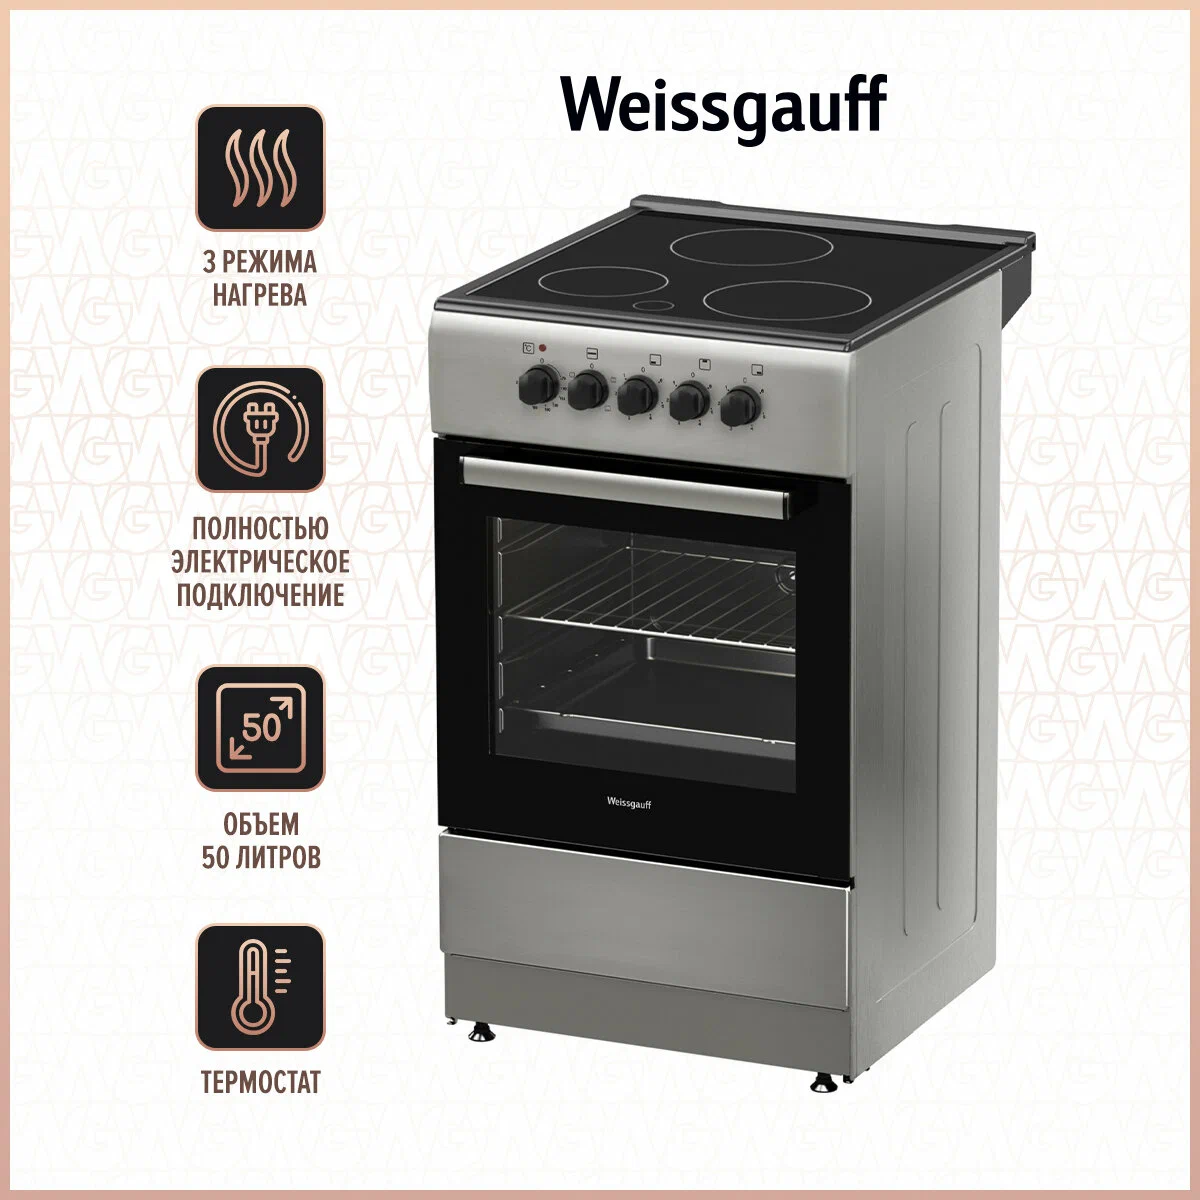 Электрическая плита Weissgauff WES E2V05 S серебристый 